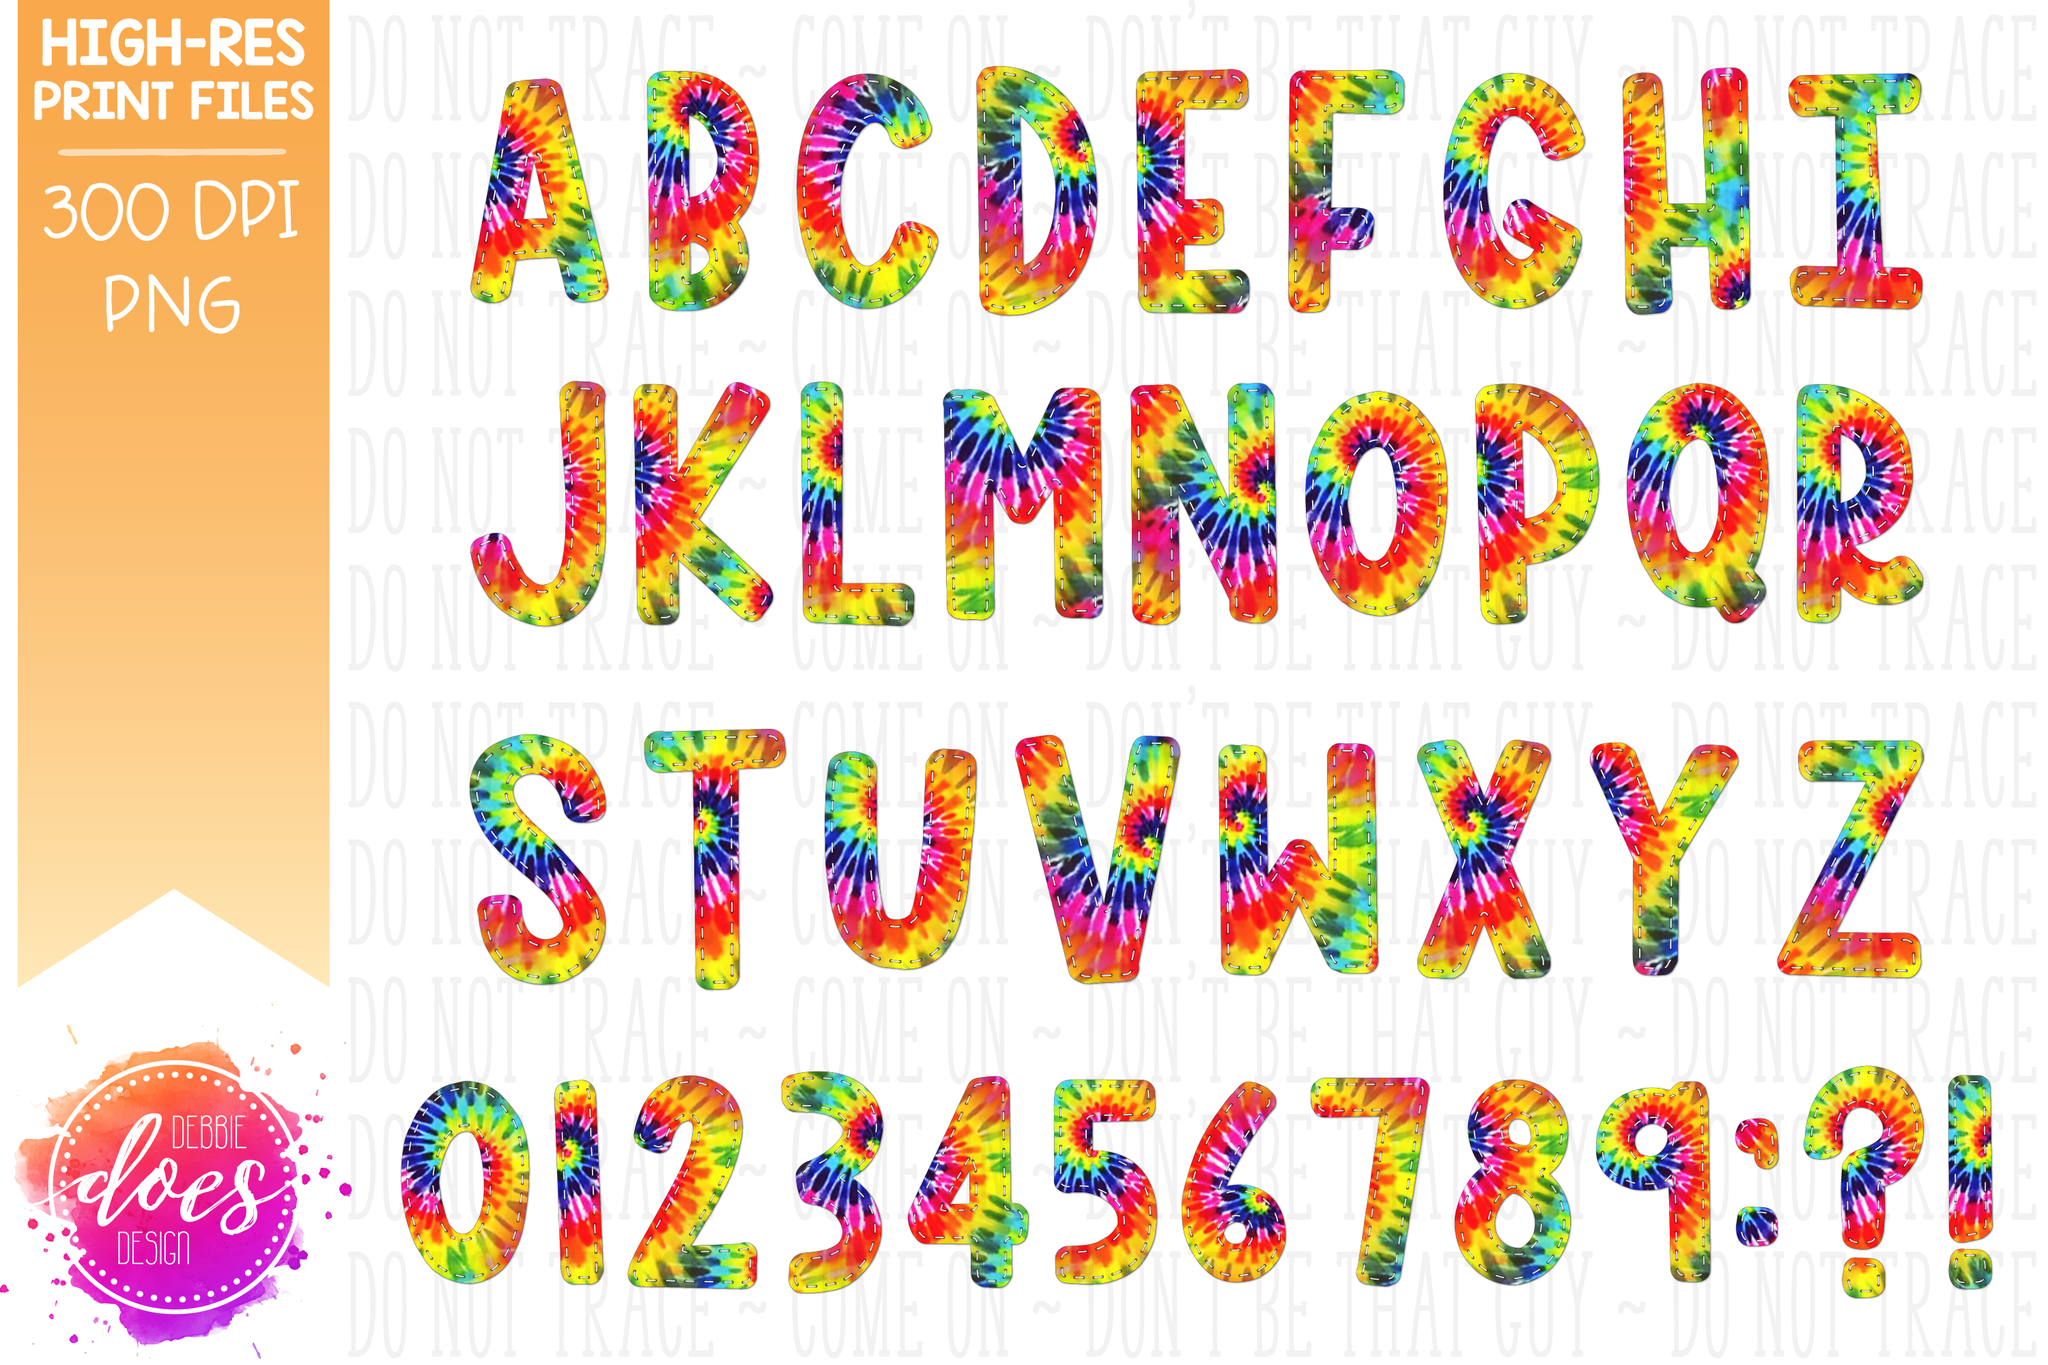 Bright Tie Dye Scrapbook Letters